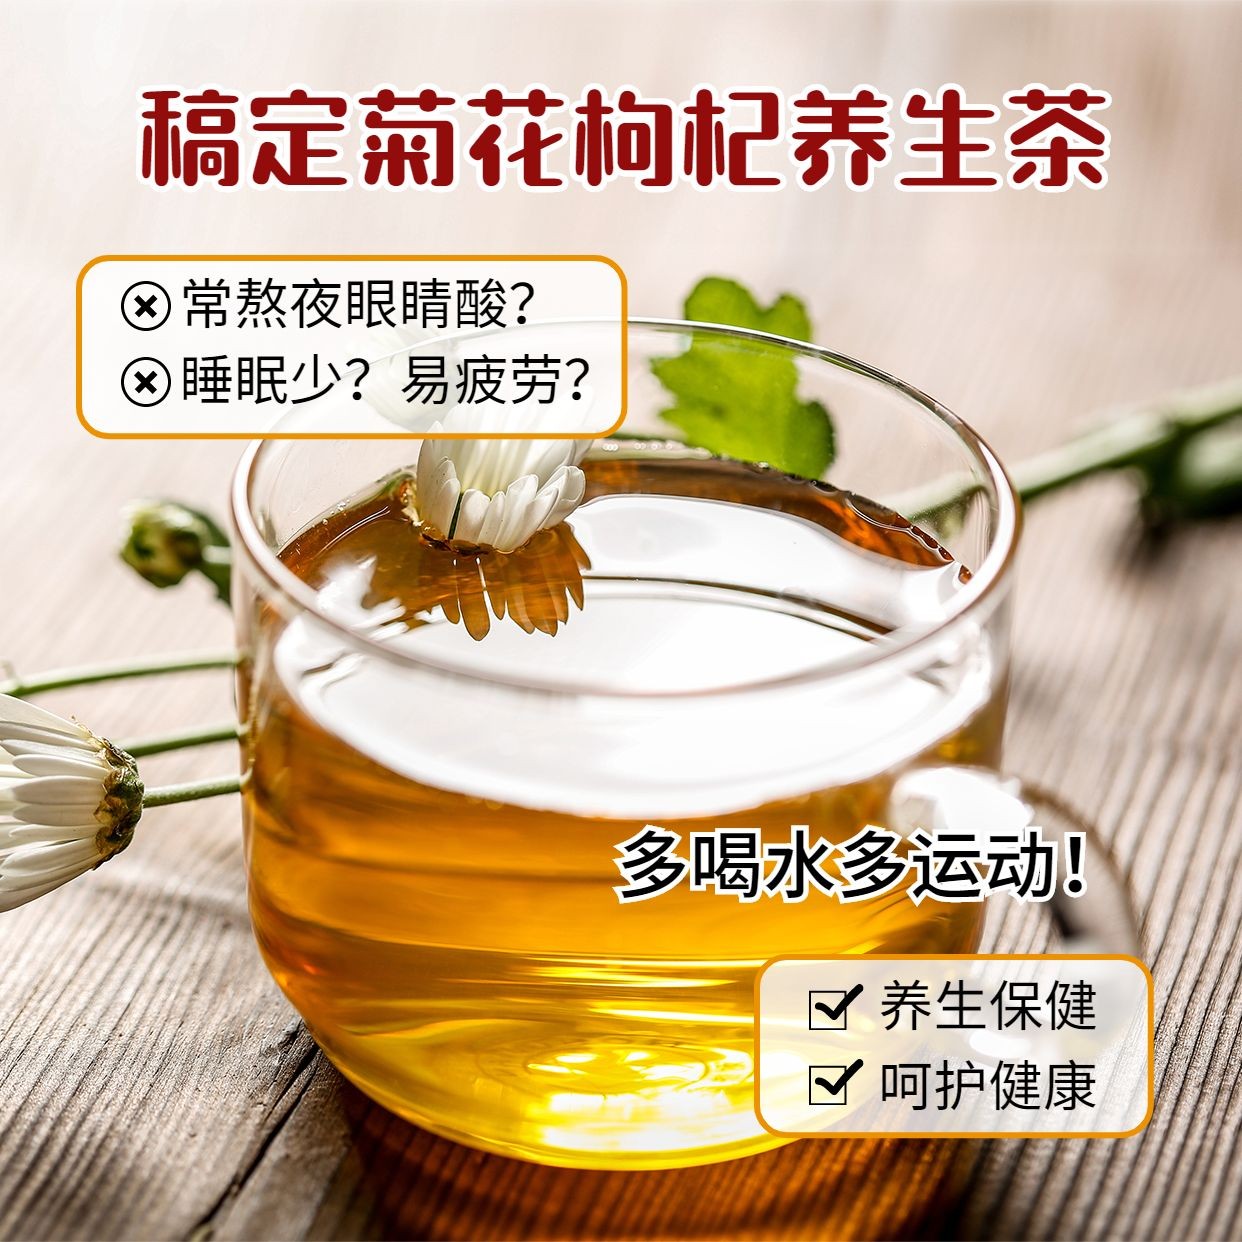 养生保健产品展示枸杞茶预览效果